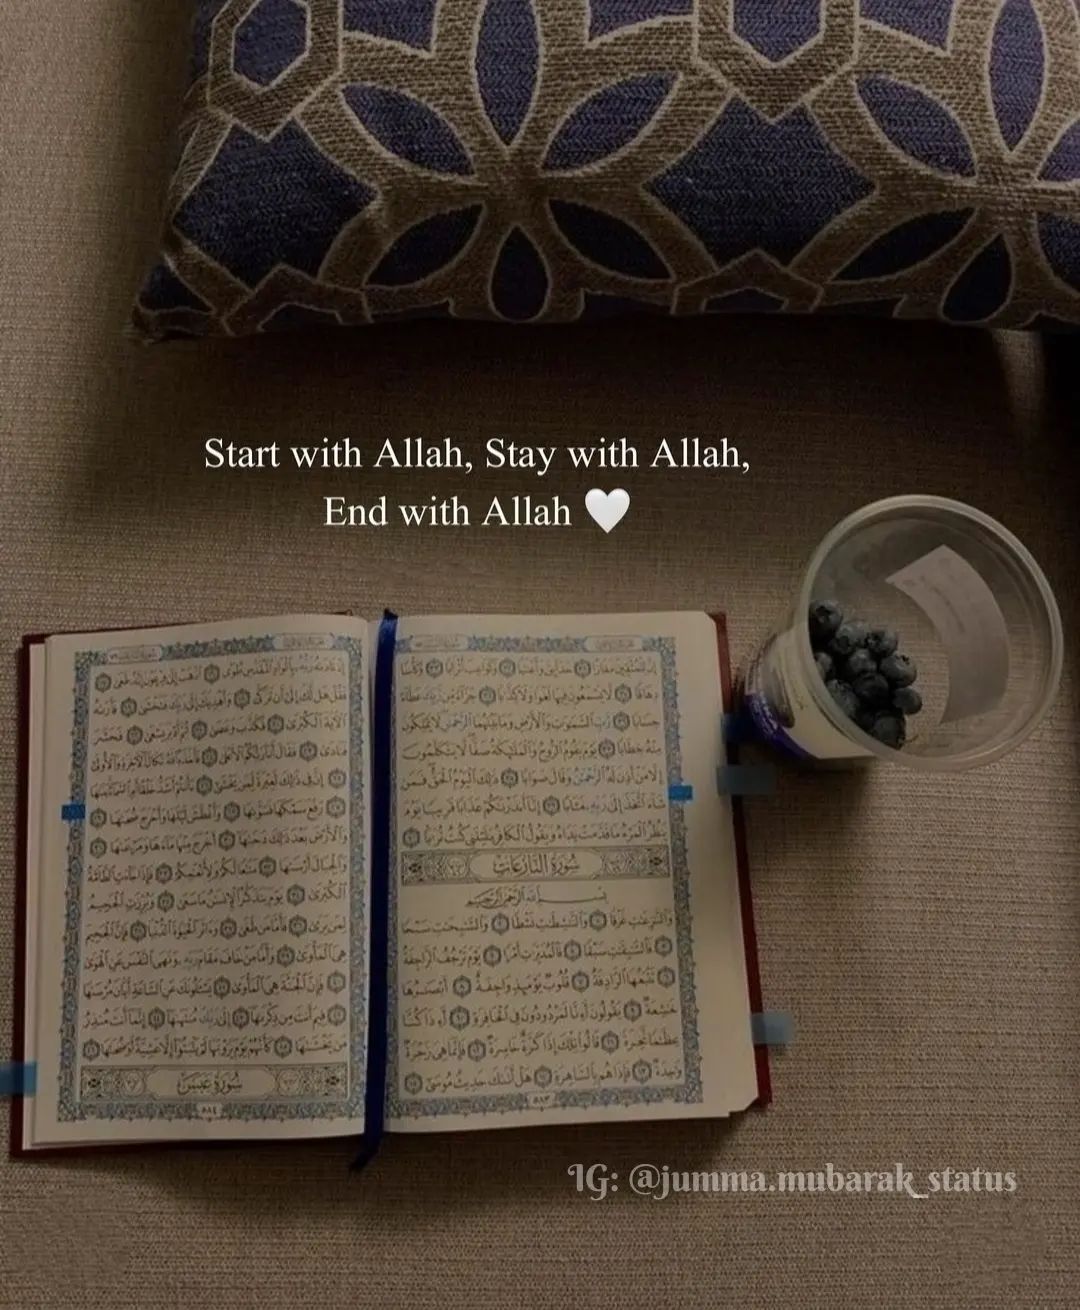 Start with Allah Stay with Allah end with Allah